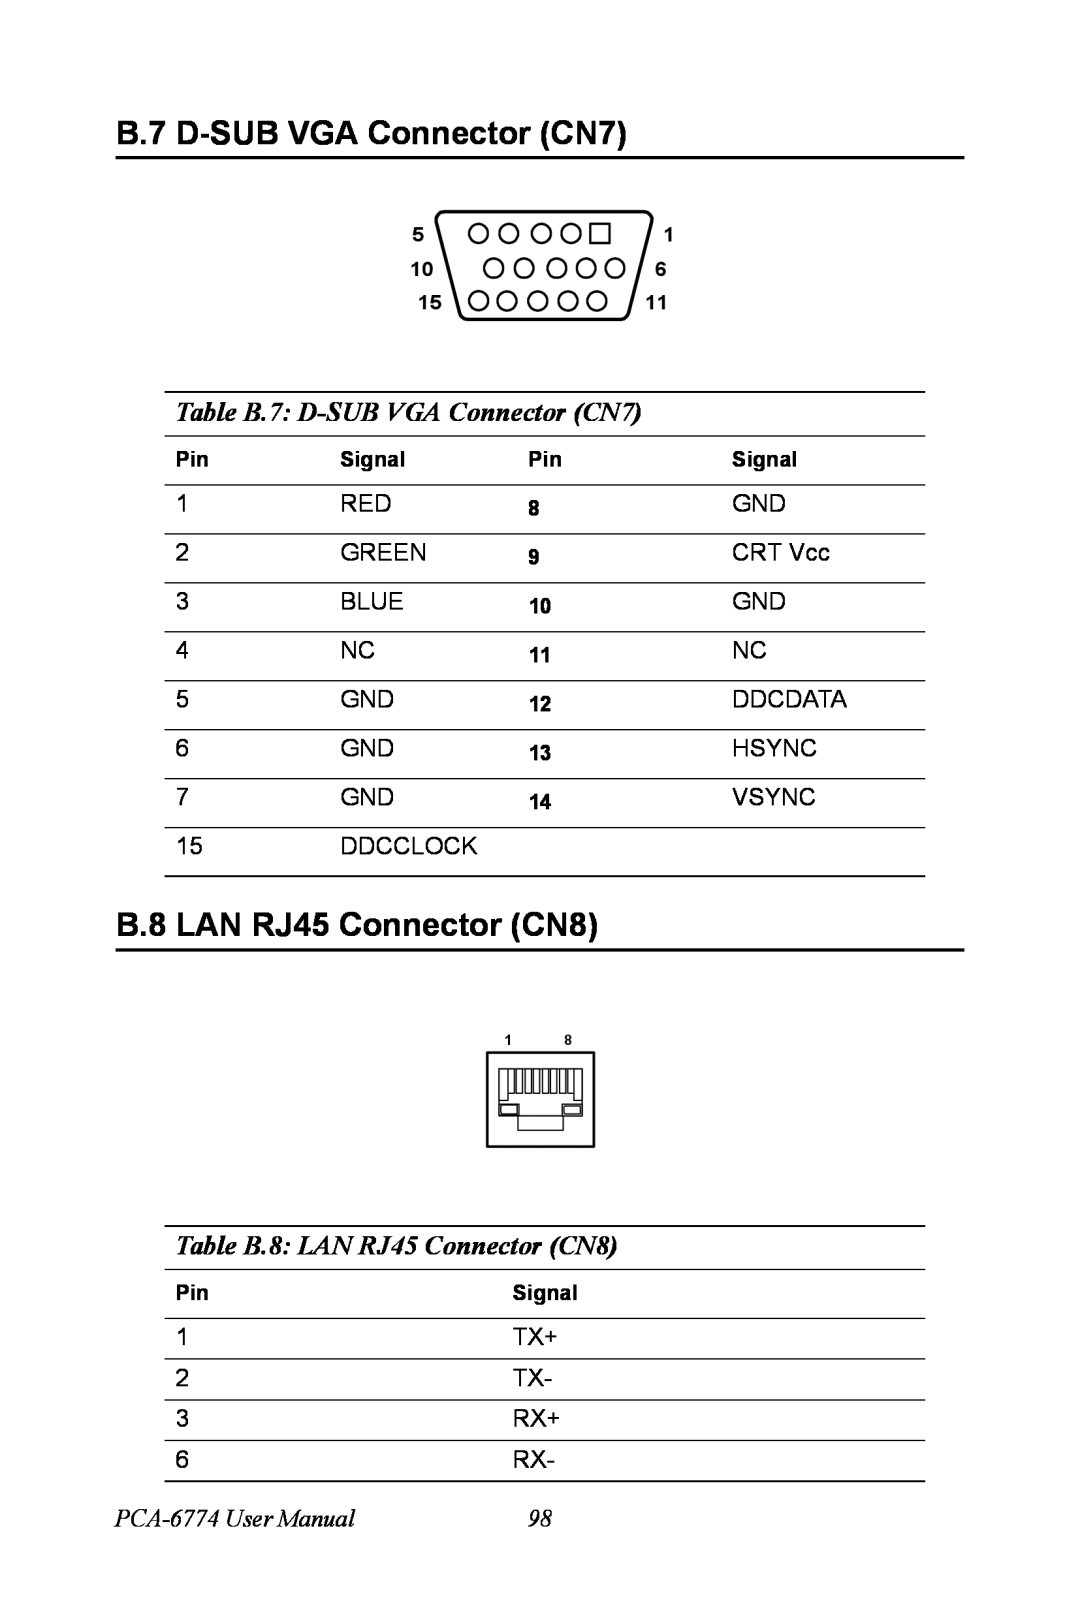 Advantech user manual Table B.7 D-SUB VGA Connector CN7, Table B.8 LAN RJ45 Connector CN8, PCA-6774 User Manual 